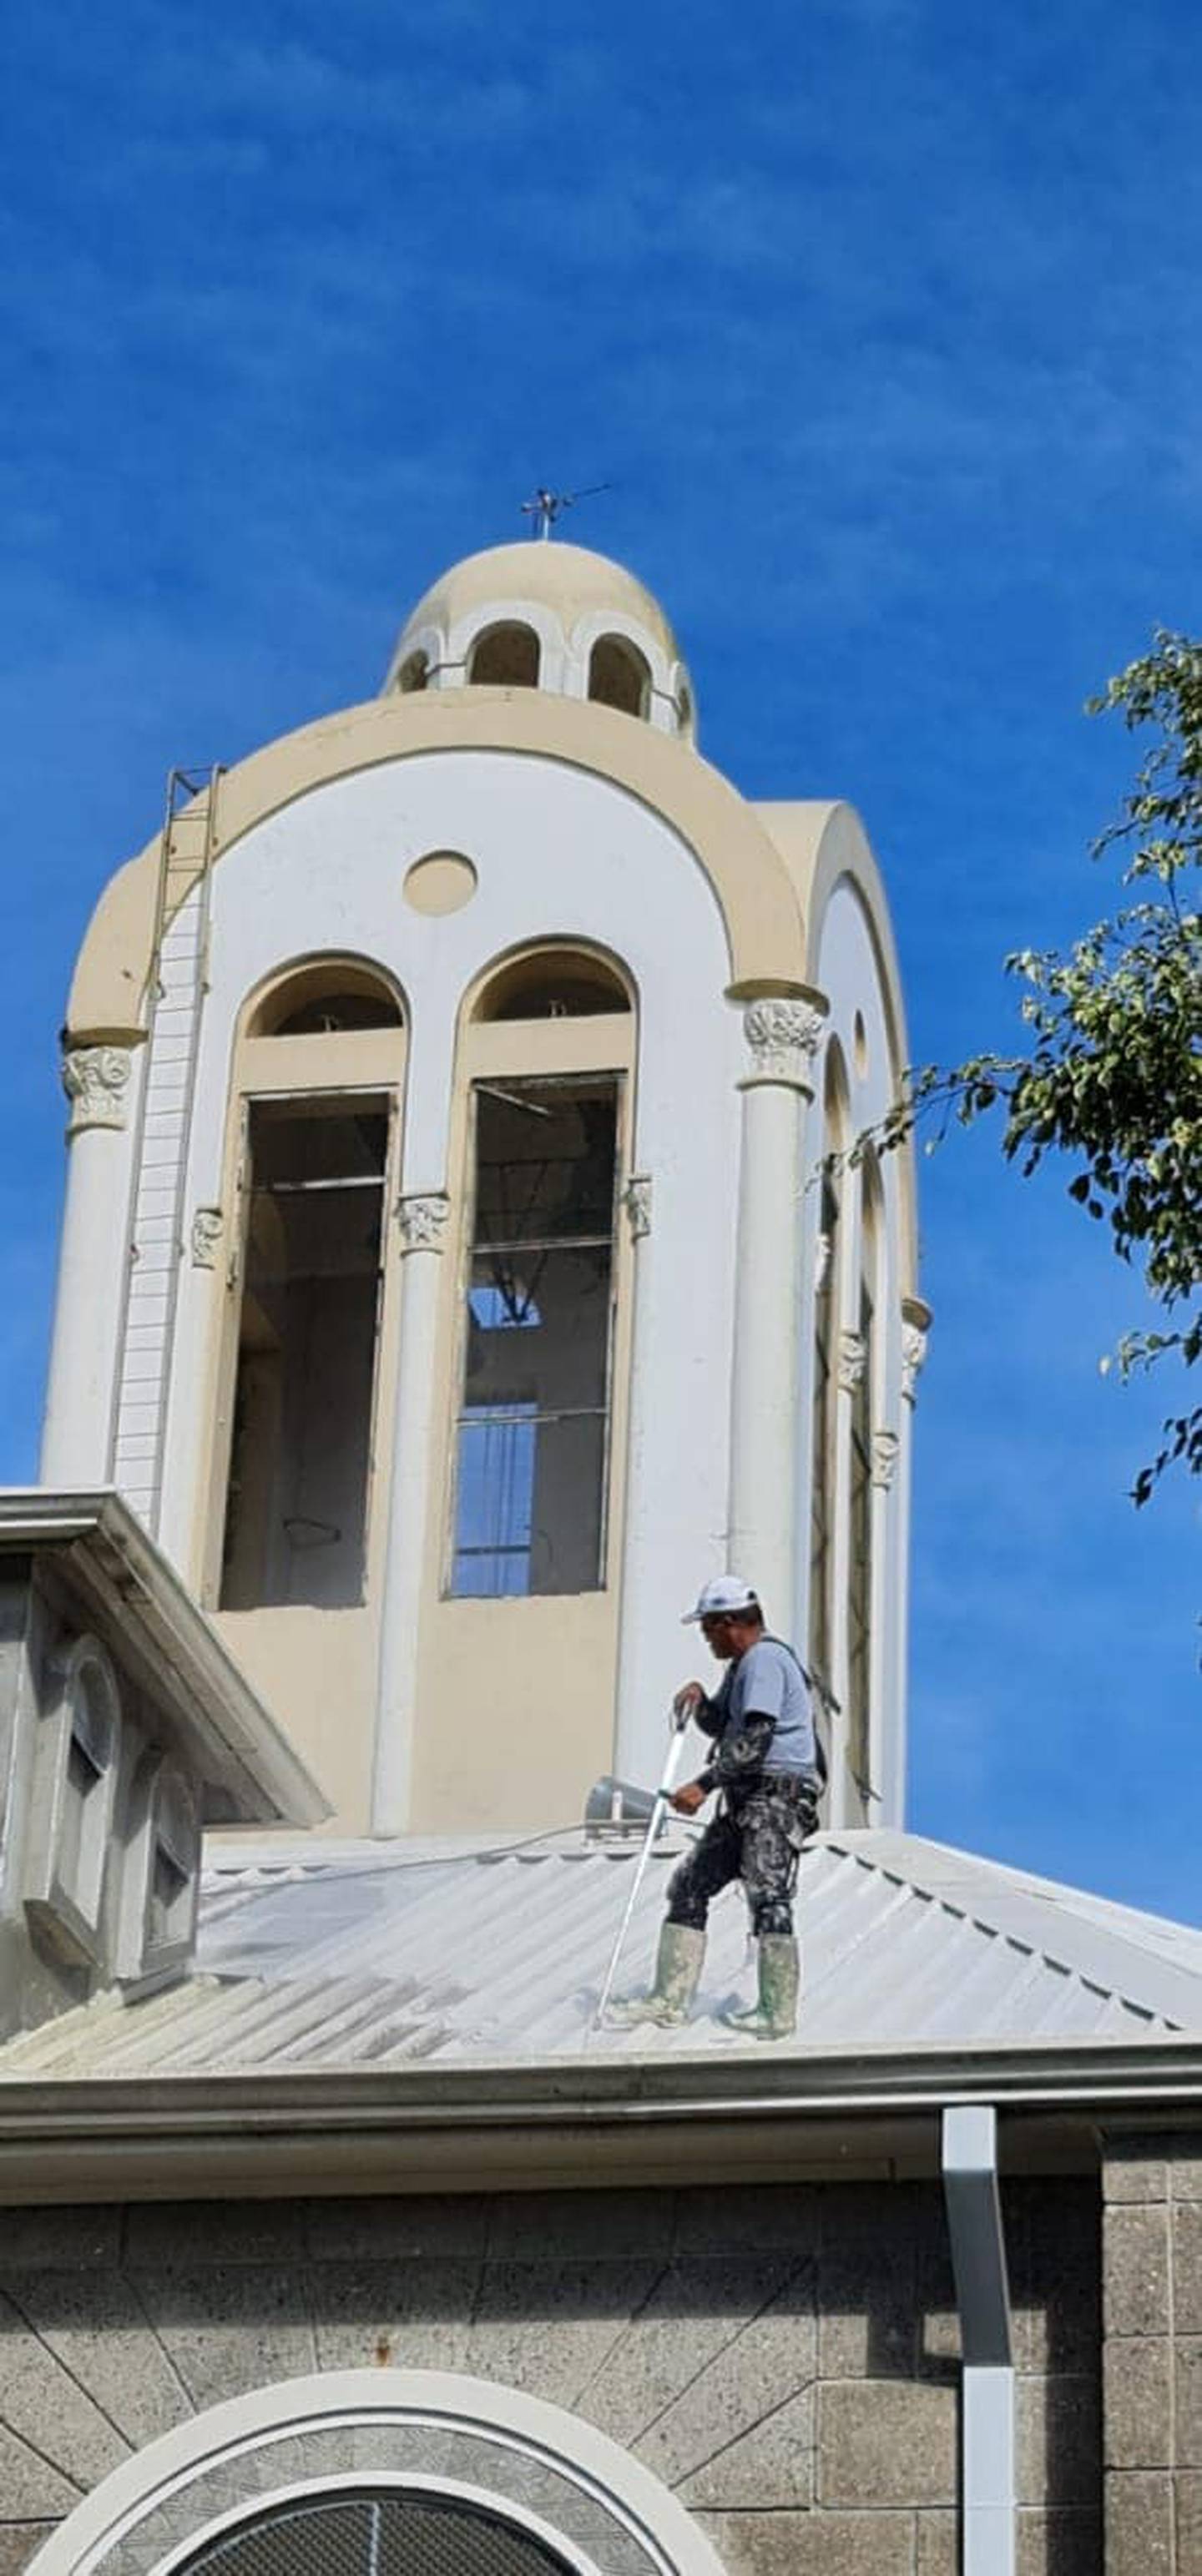 En estos momentos la Basílica de Nuestra Señora de Los Ángeles en Cartago está recibiendo un buen baño para dejarla preciosa con miras a la celebración de las fiestas patronales en agosto próximo.